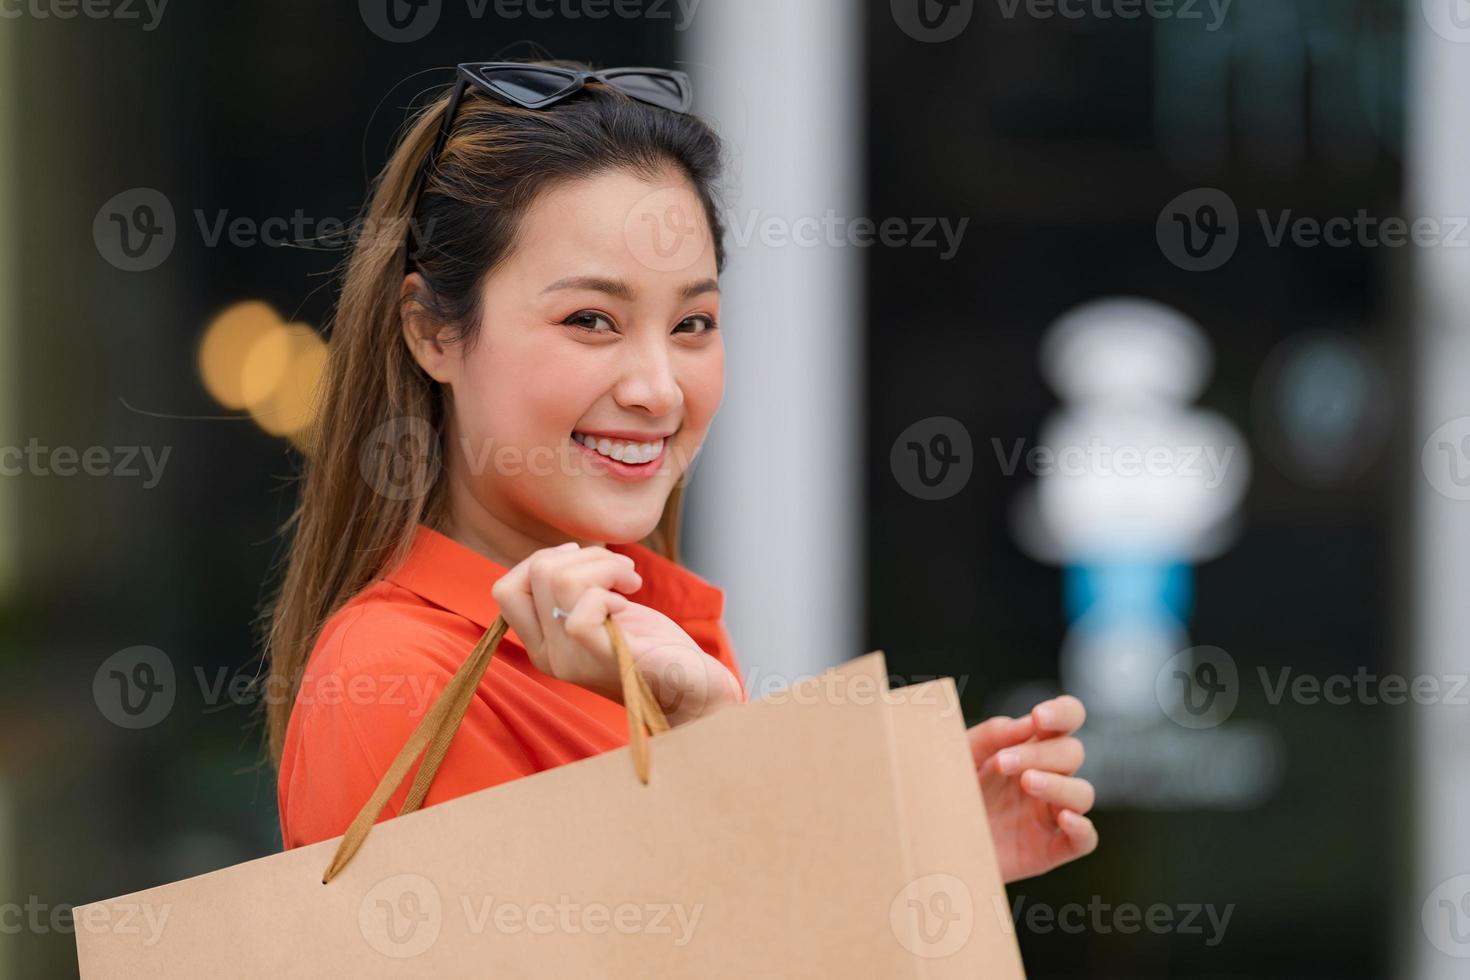 utomhus porträtt av glad kvinna med shoppingkassar foto